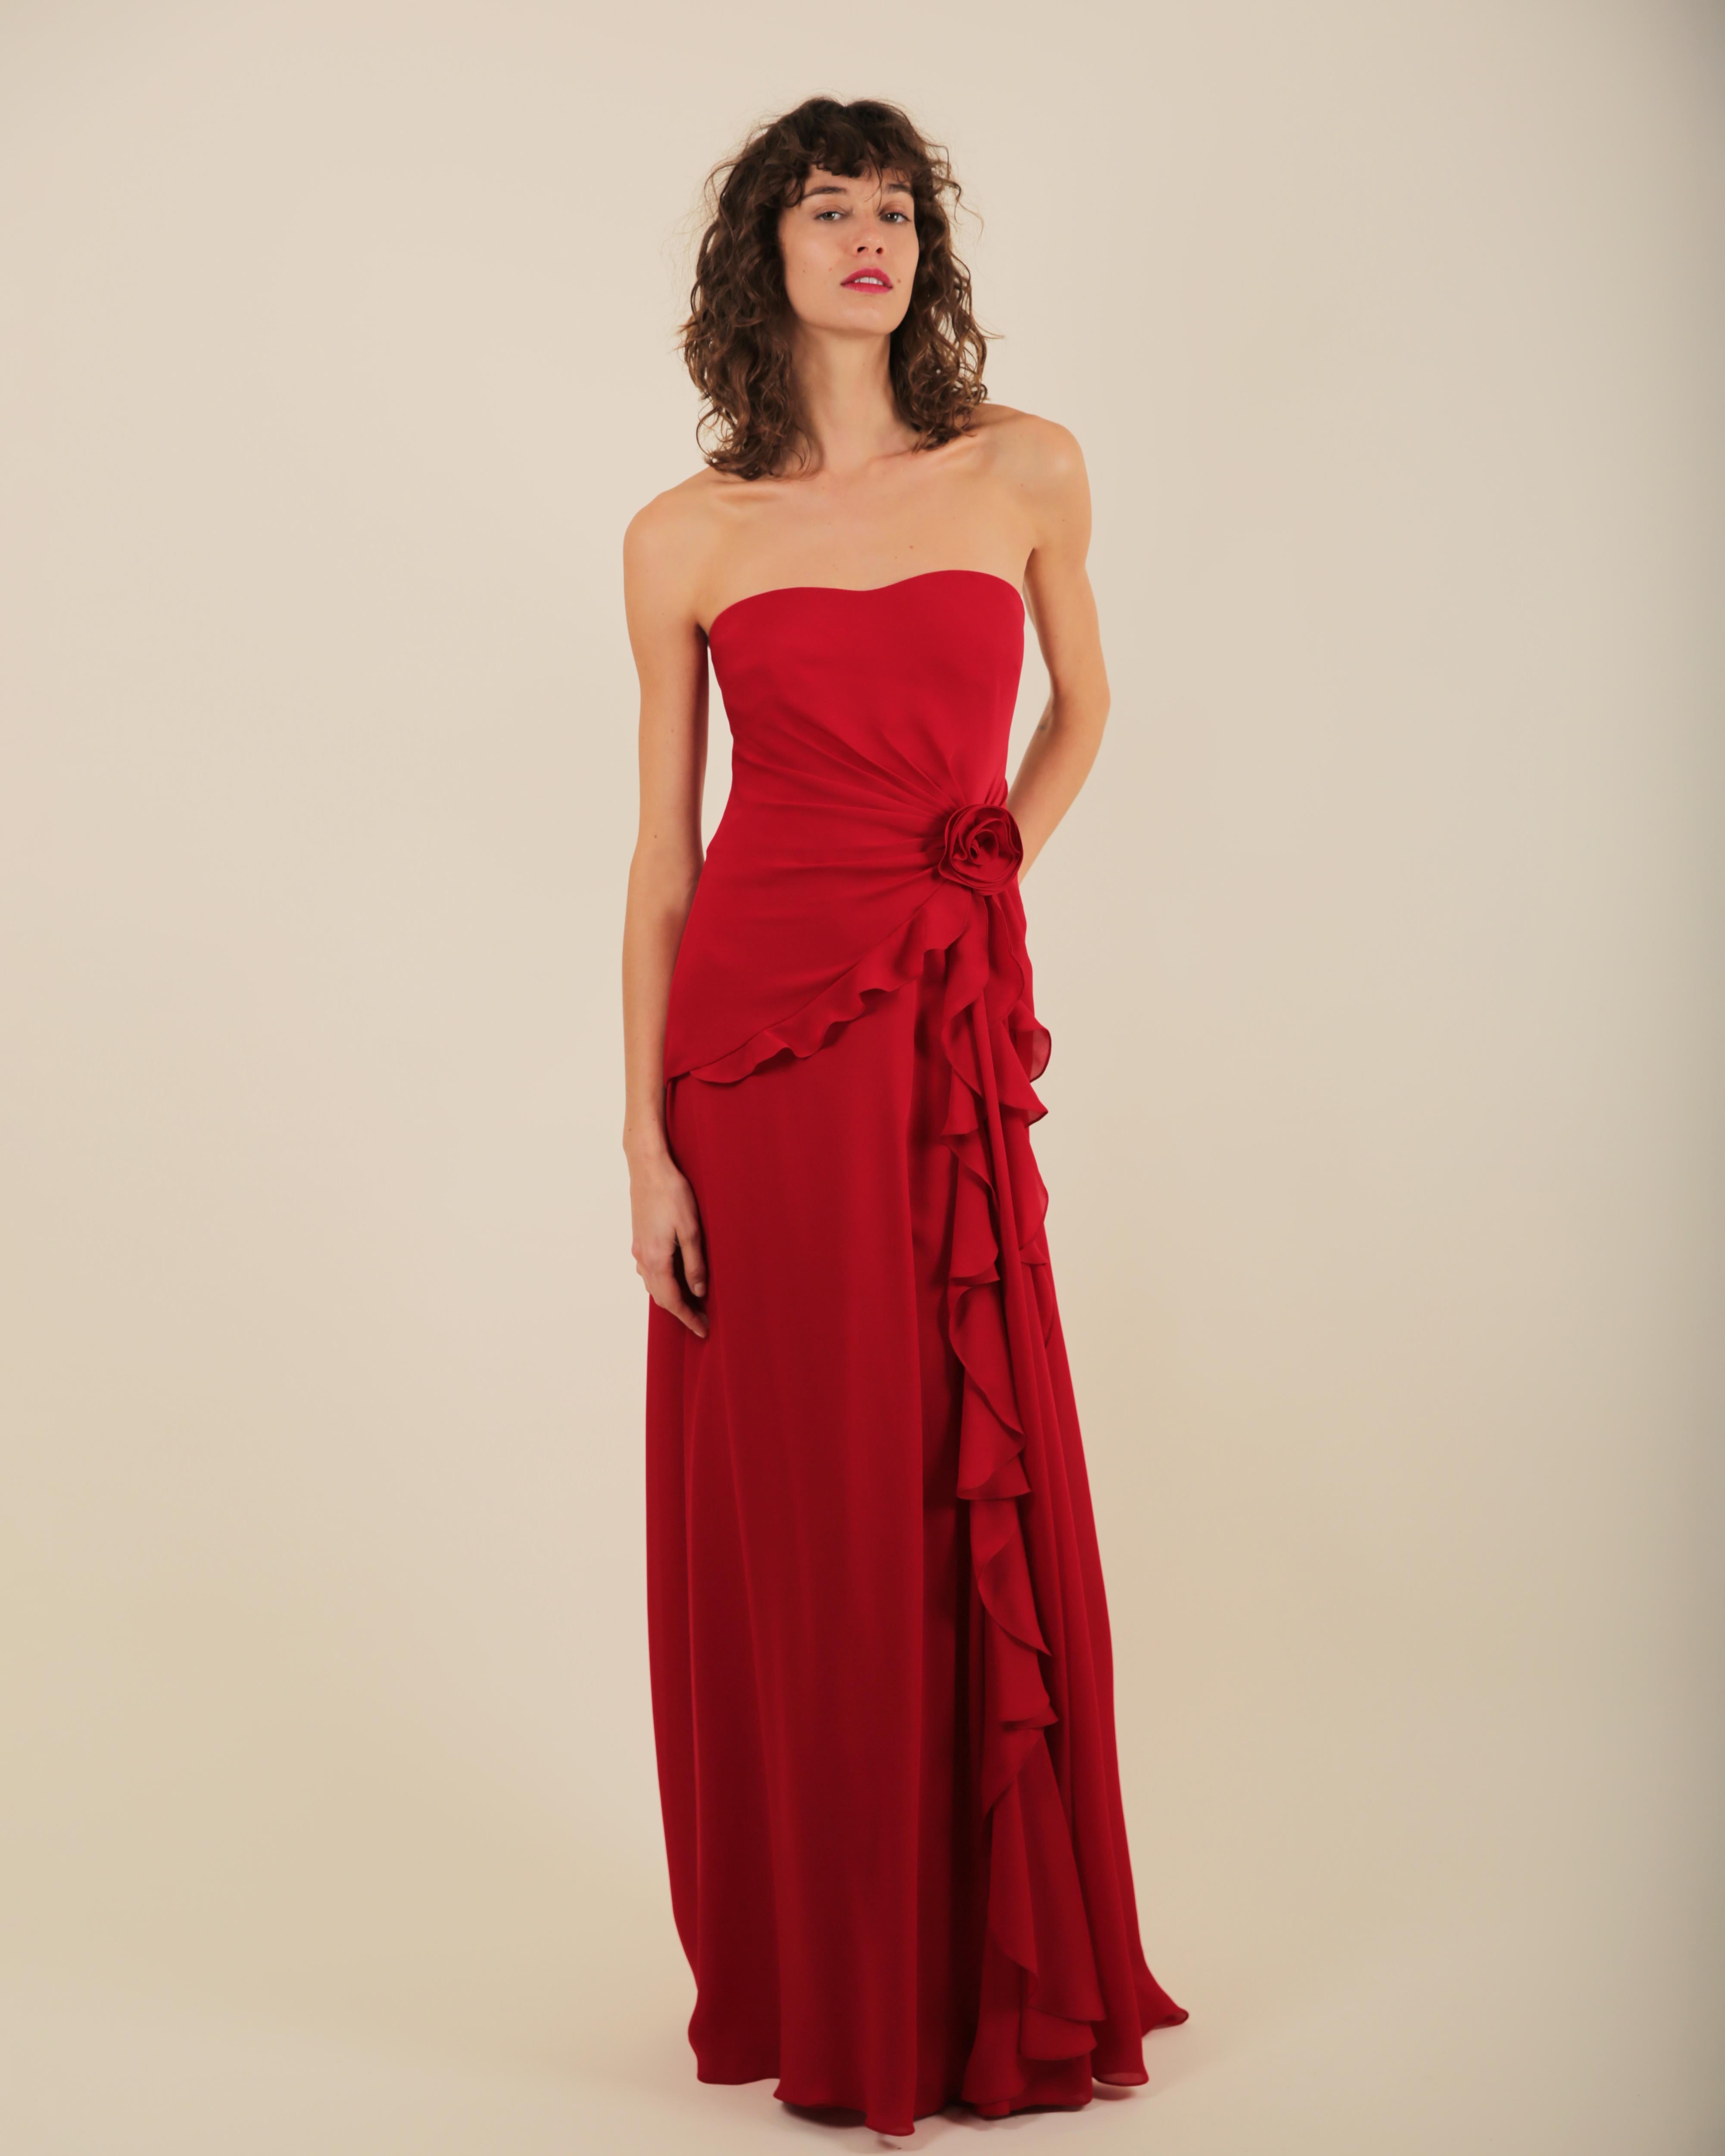 Ralph Lauren SS 2013 strapless bustier red sweetheart neck train silk gown dress 12